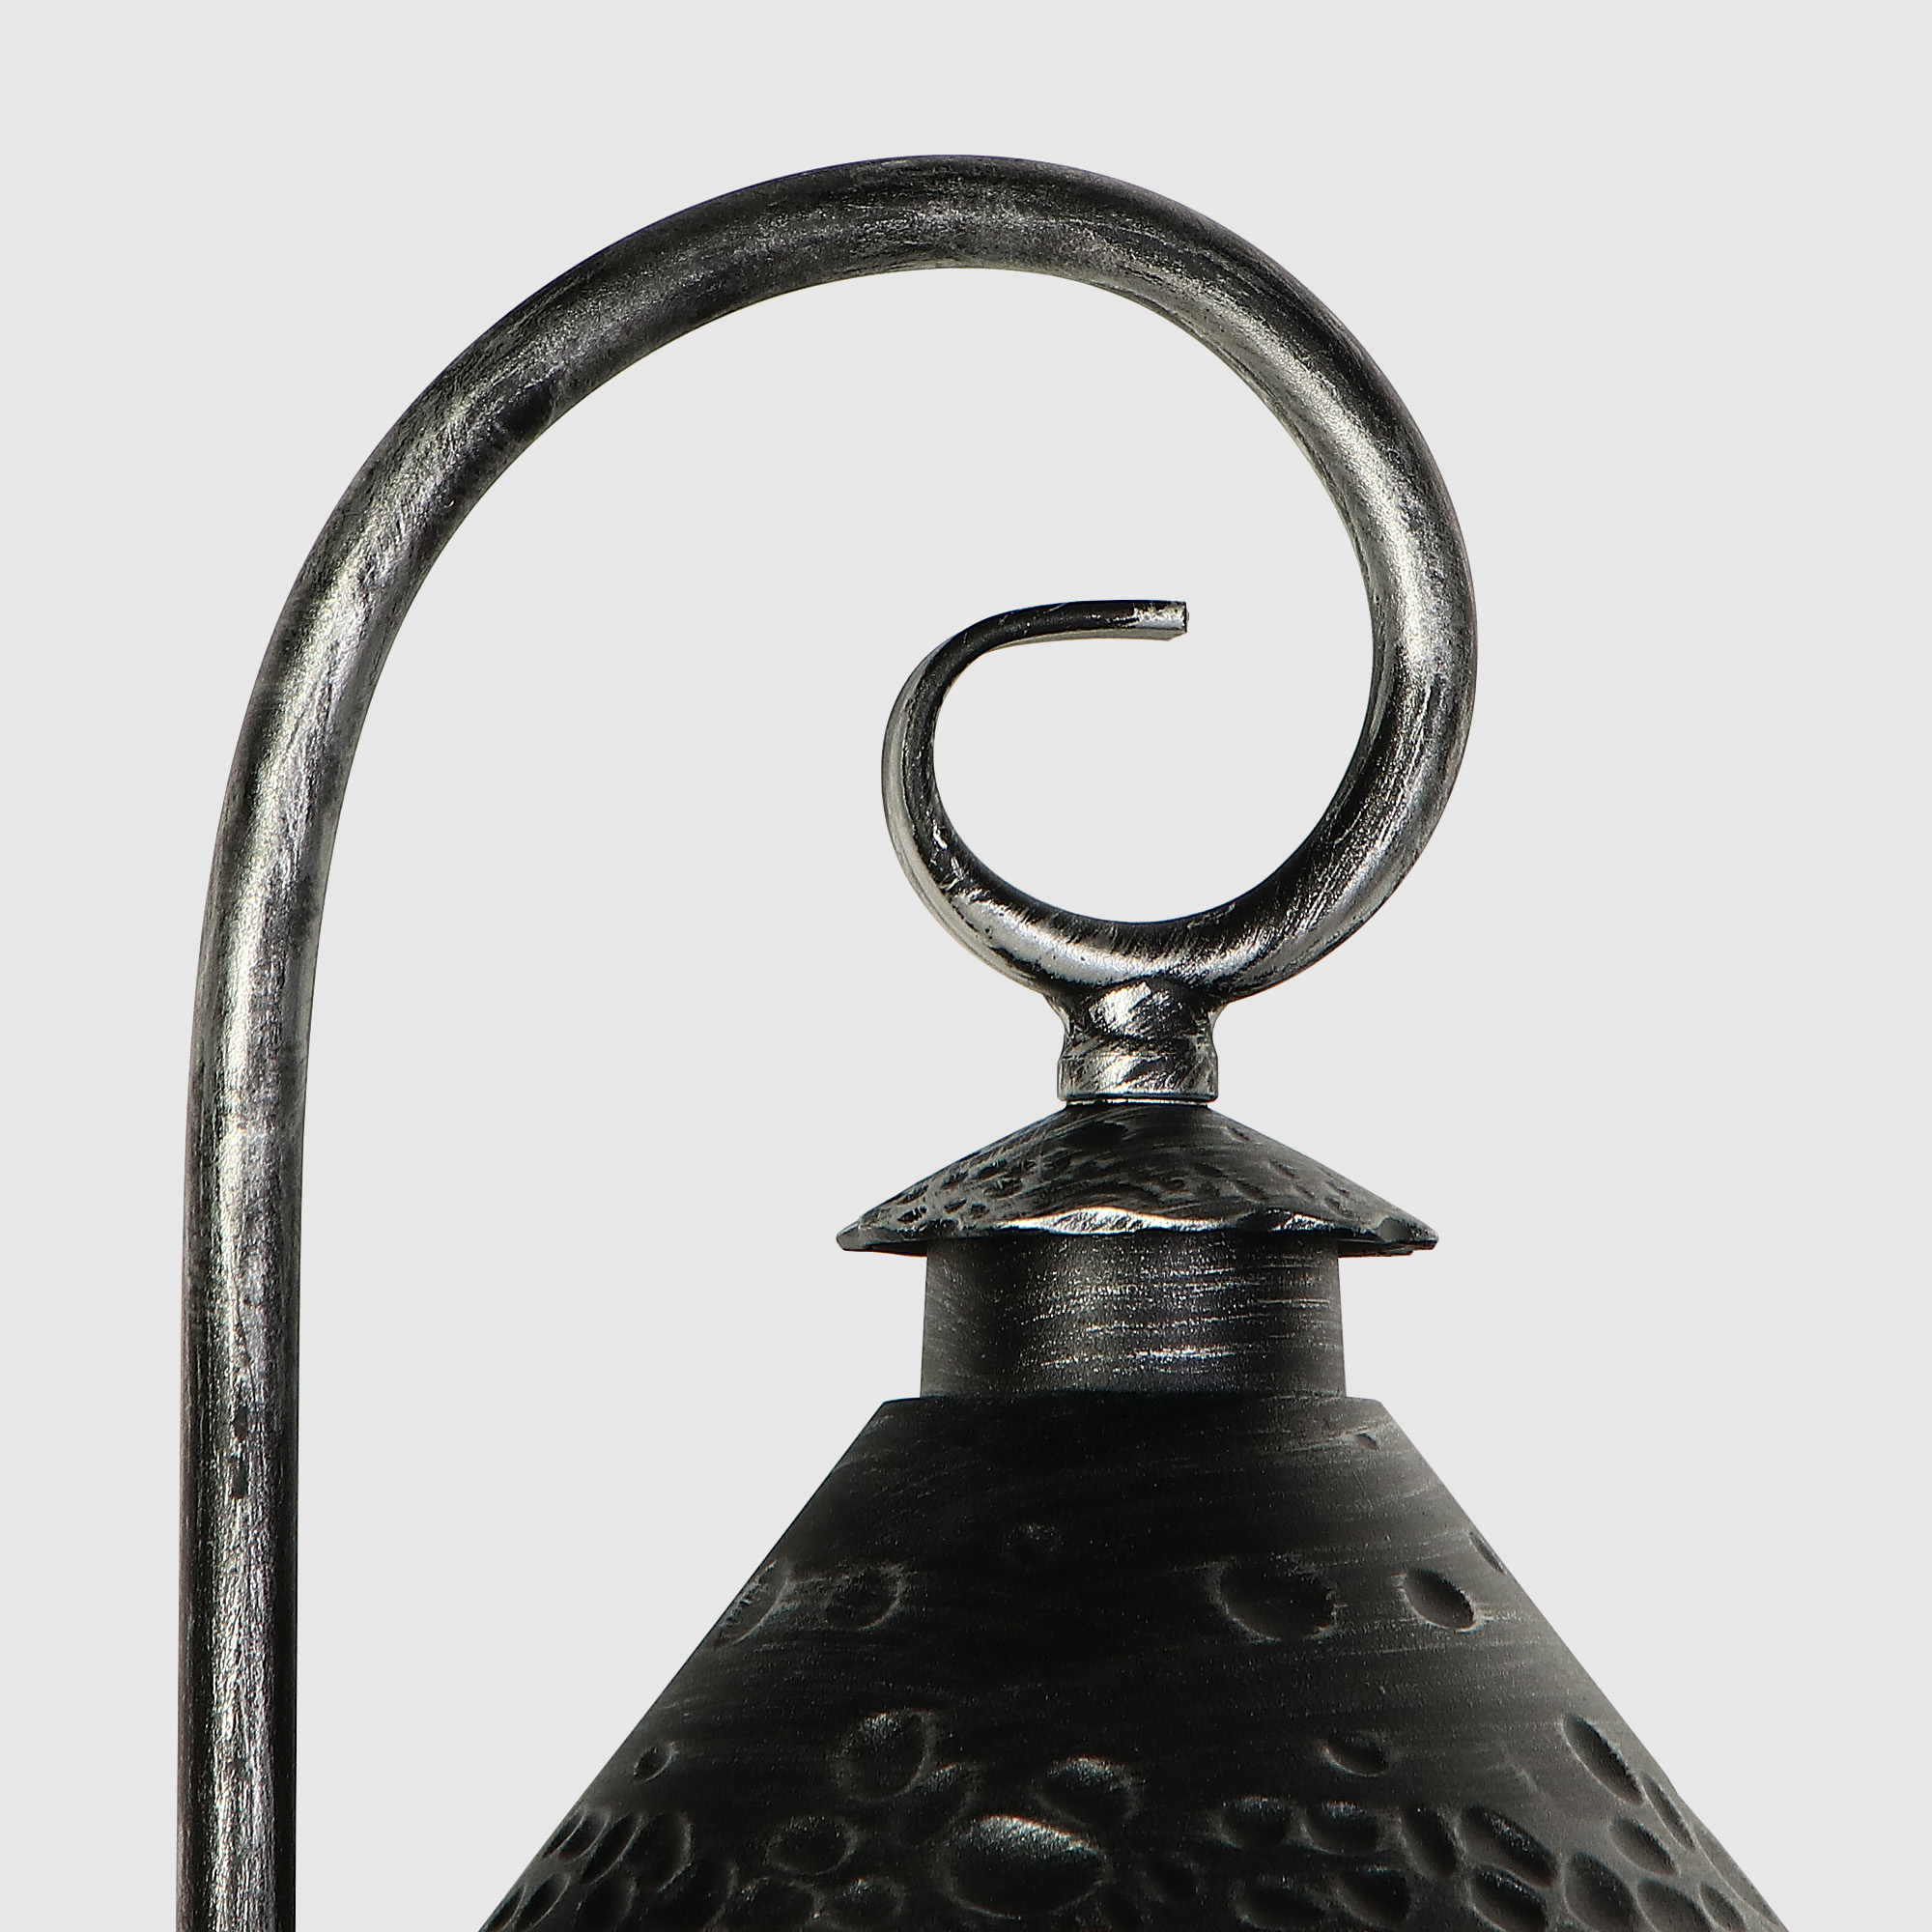 Светильник садовый Amber Lamp 8737 напольный IP23 E27 100Вт, чёрное серебро, цвет прозрачный, чёрное серебро - фото 4